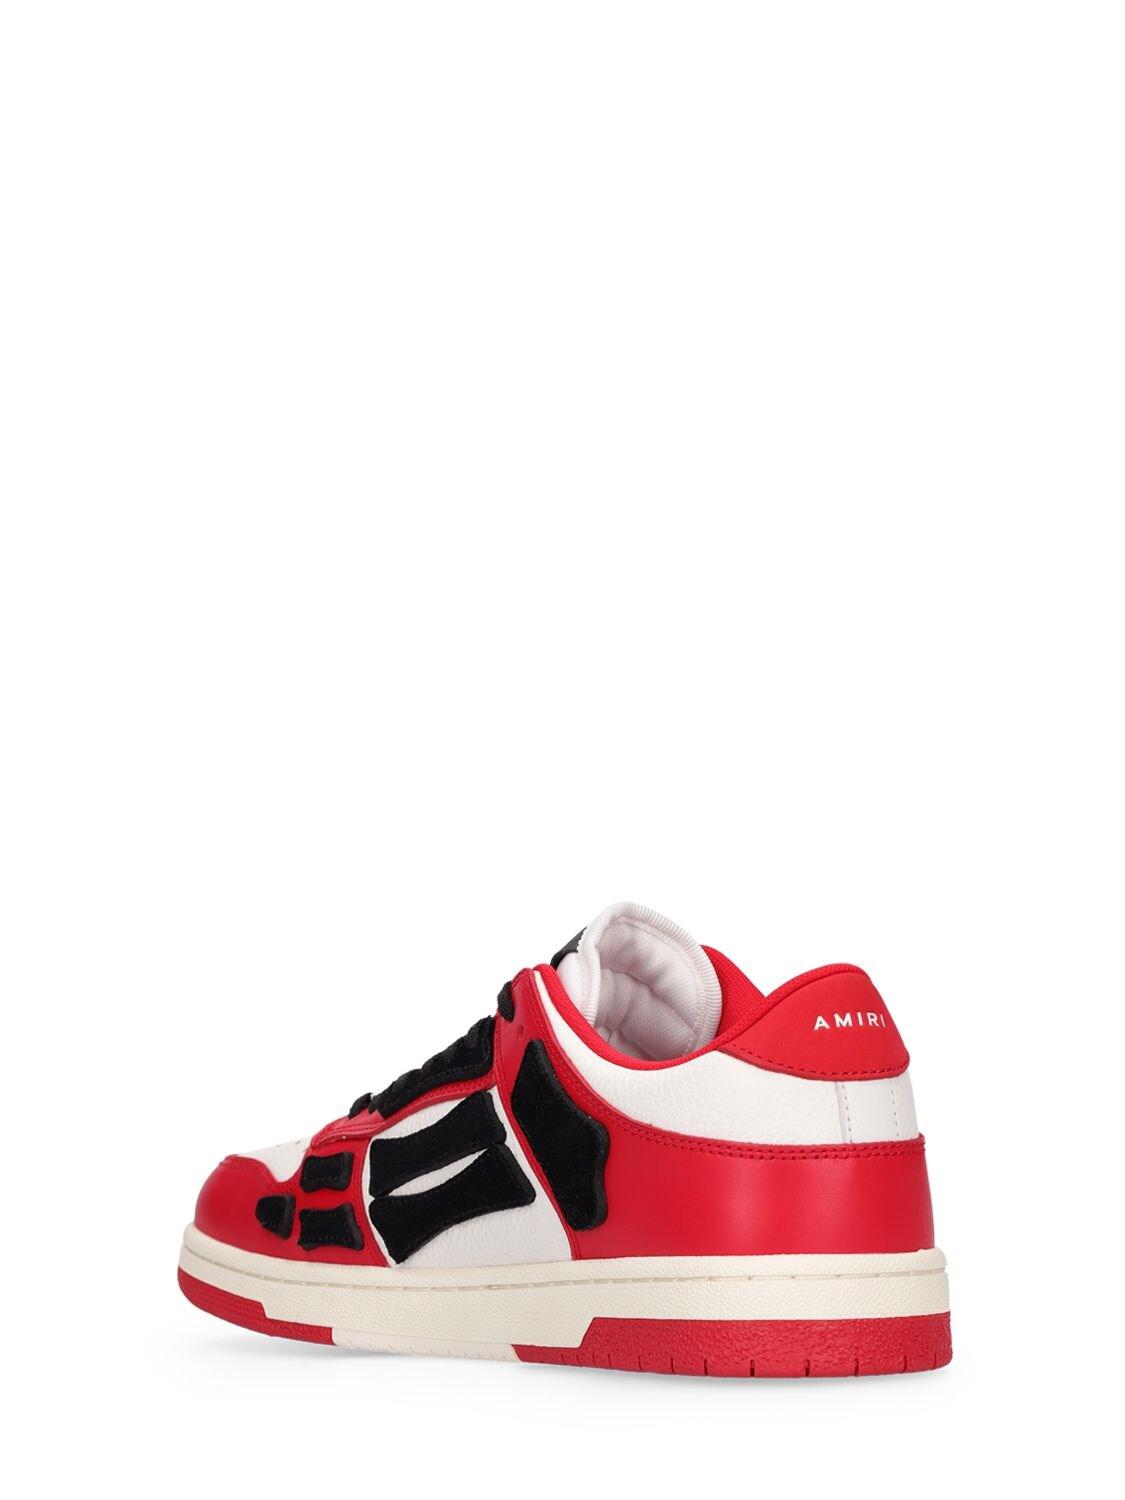 Amiri Skel Bones Low Top Leather Sneakers in Red for Men | Lyst UK